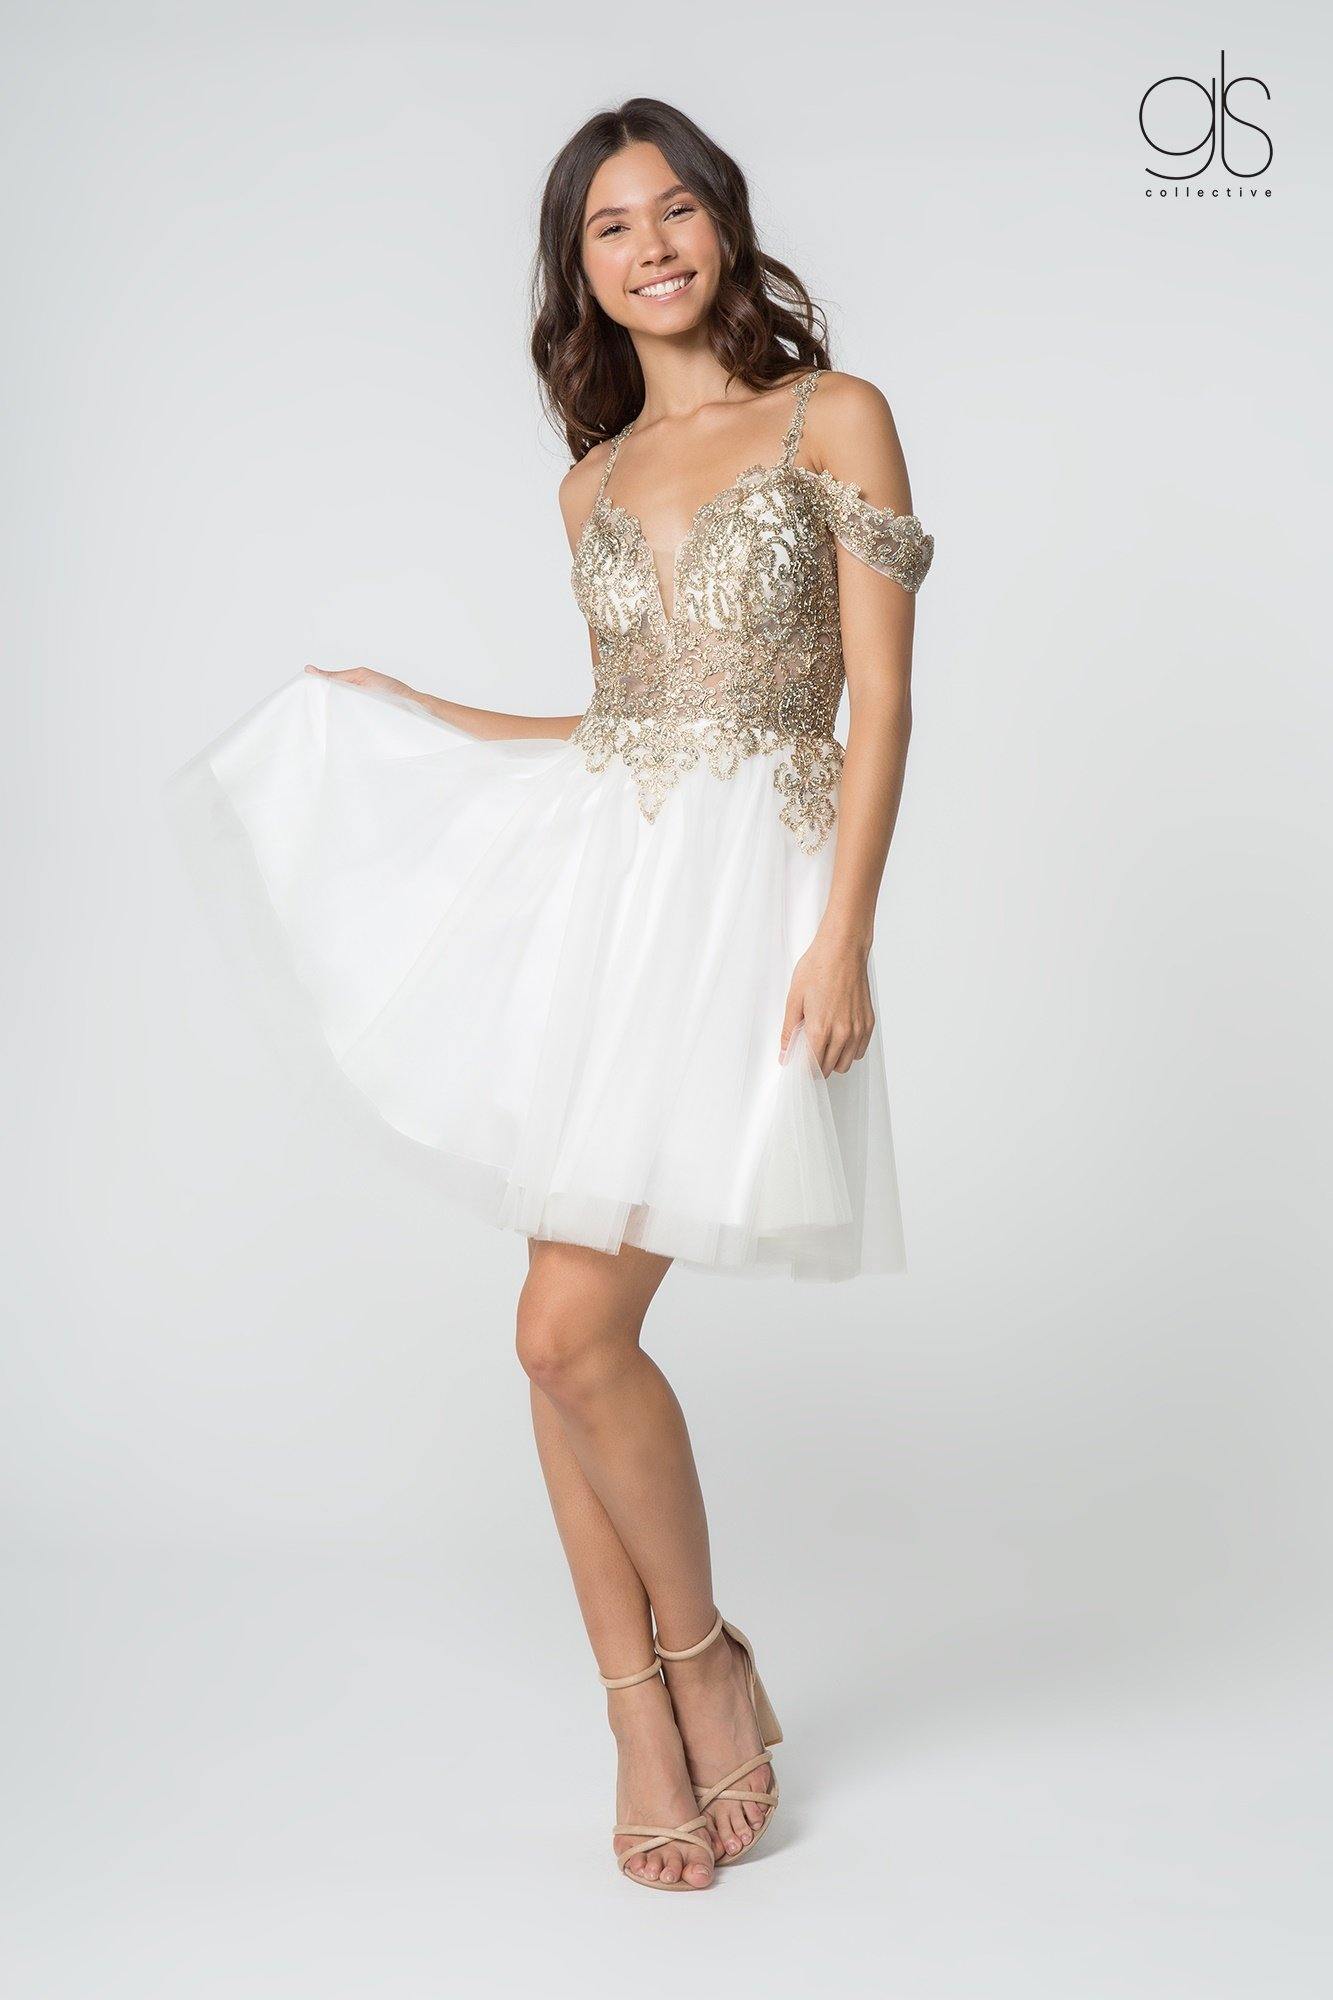 Homecoming Off Shoulder Short Cocktail Prom Dress - The Dress Outlet Elizabeth K